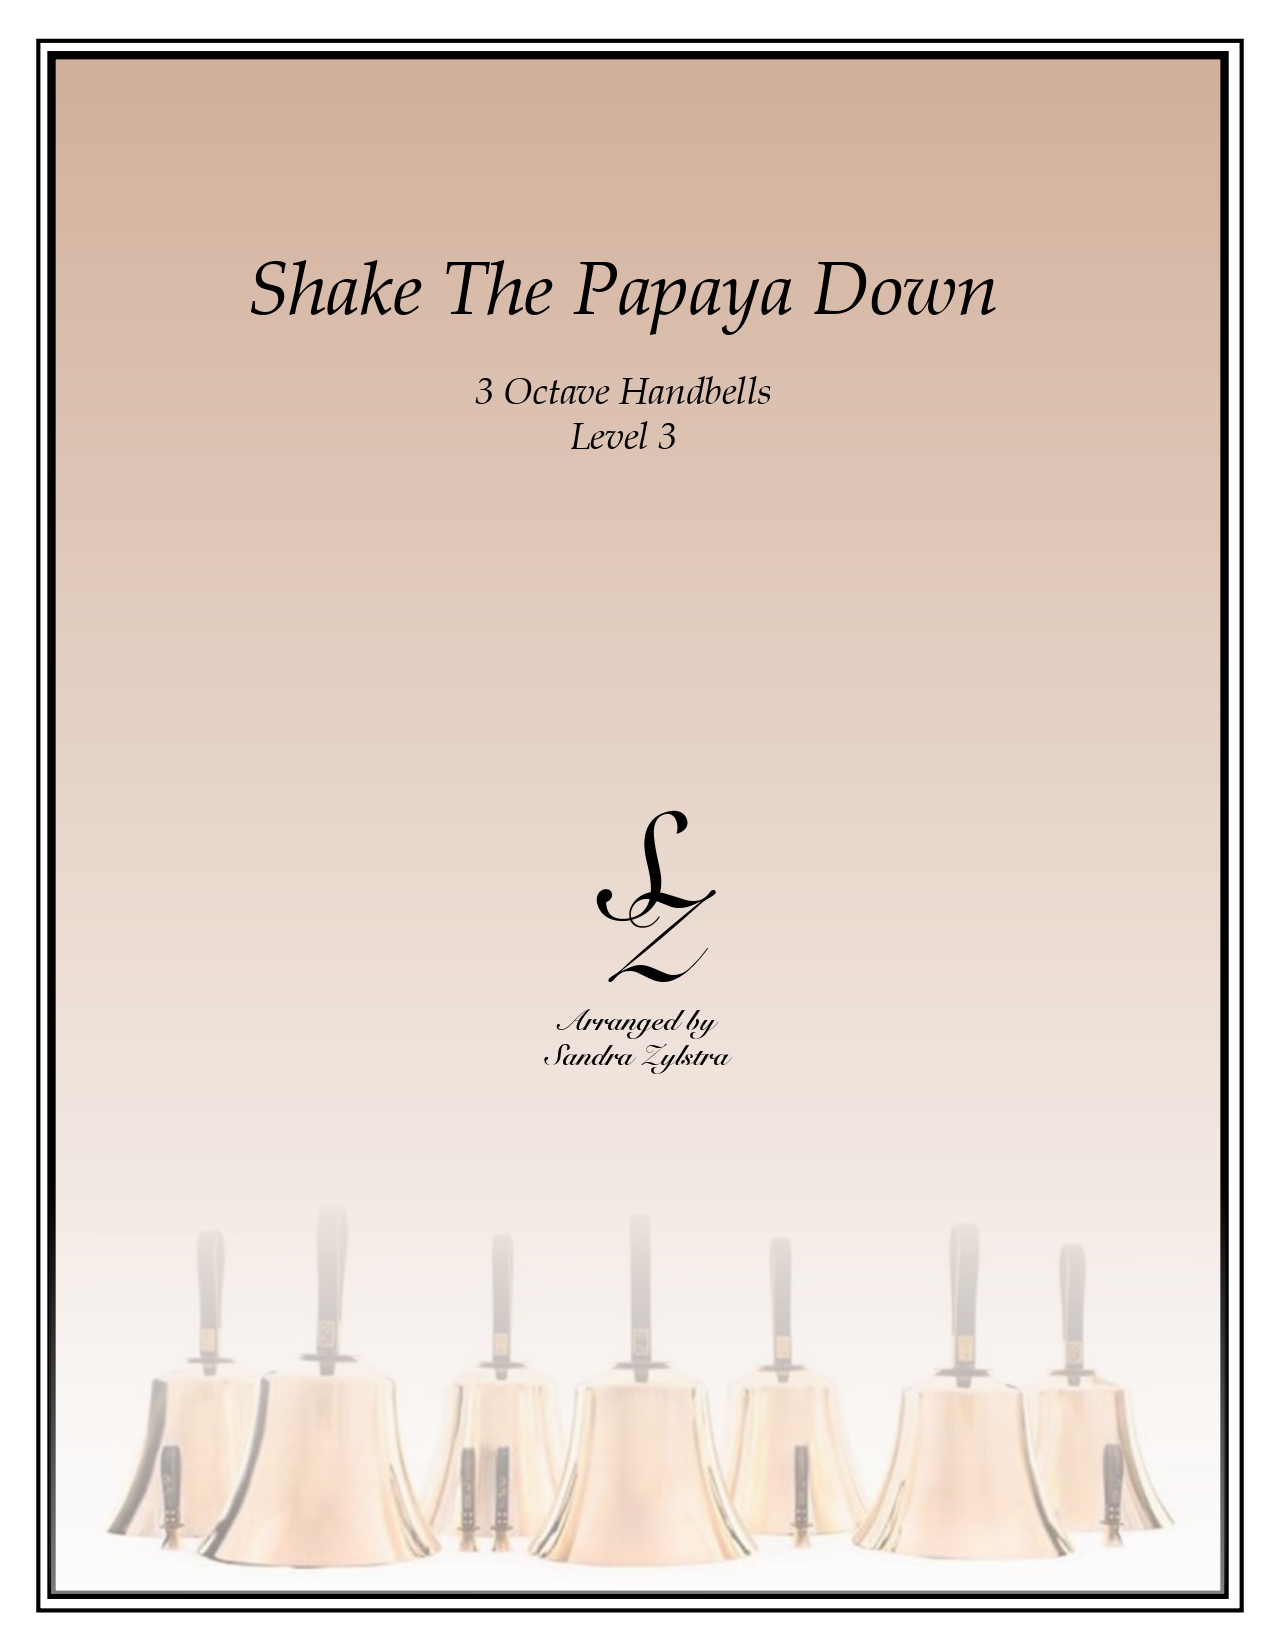 Shake The Papaya Down 3 octave handbells cover page 00011